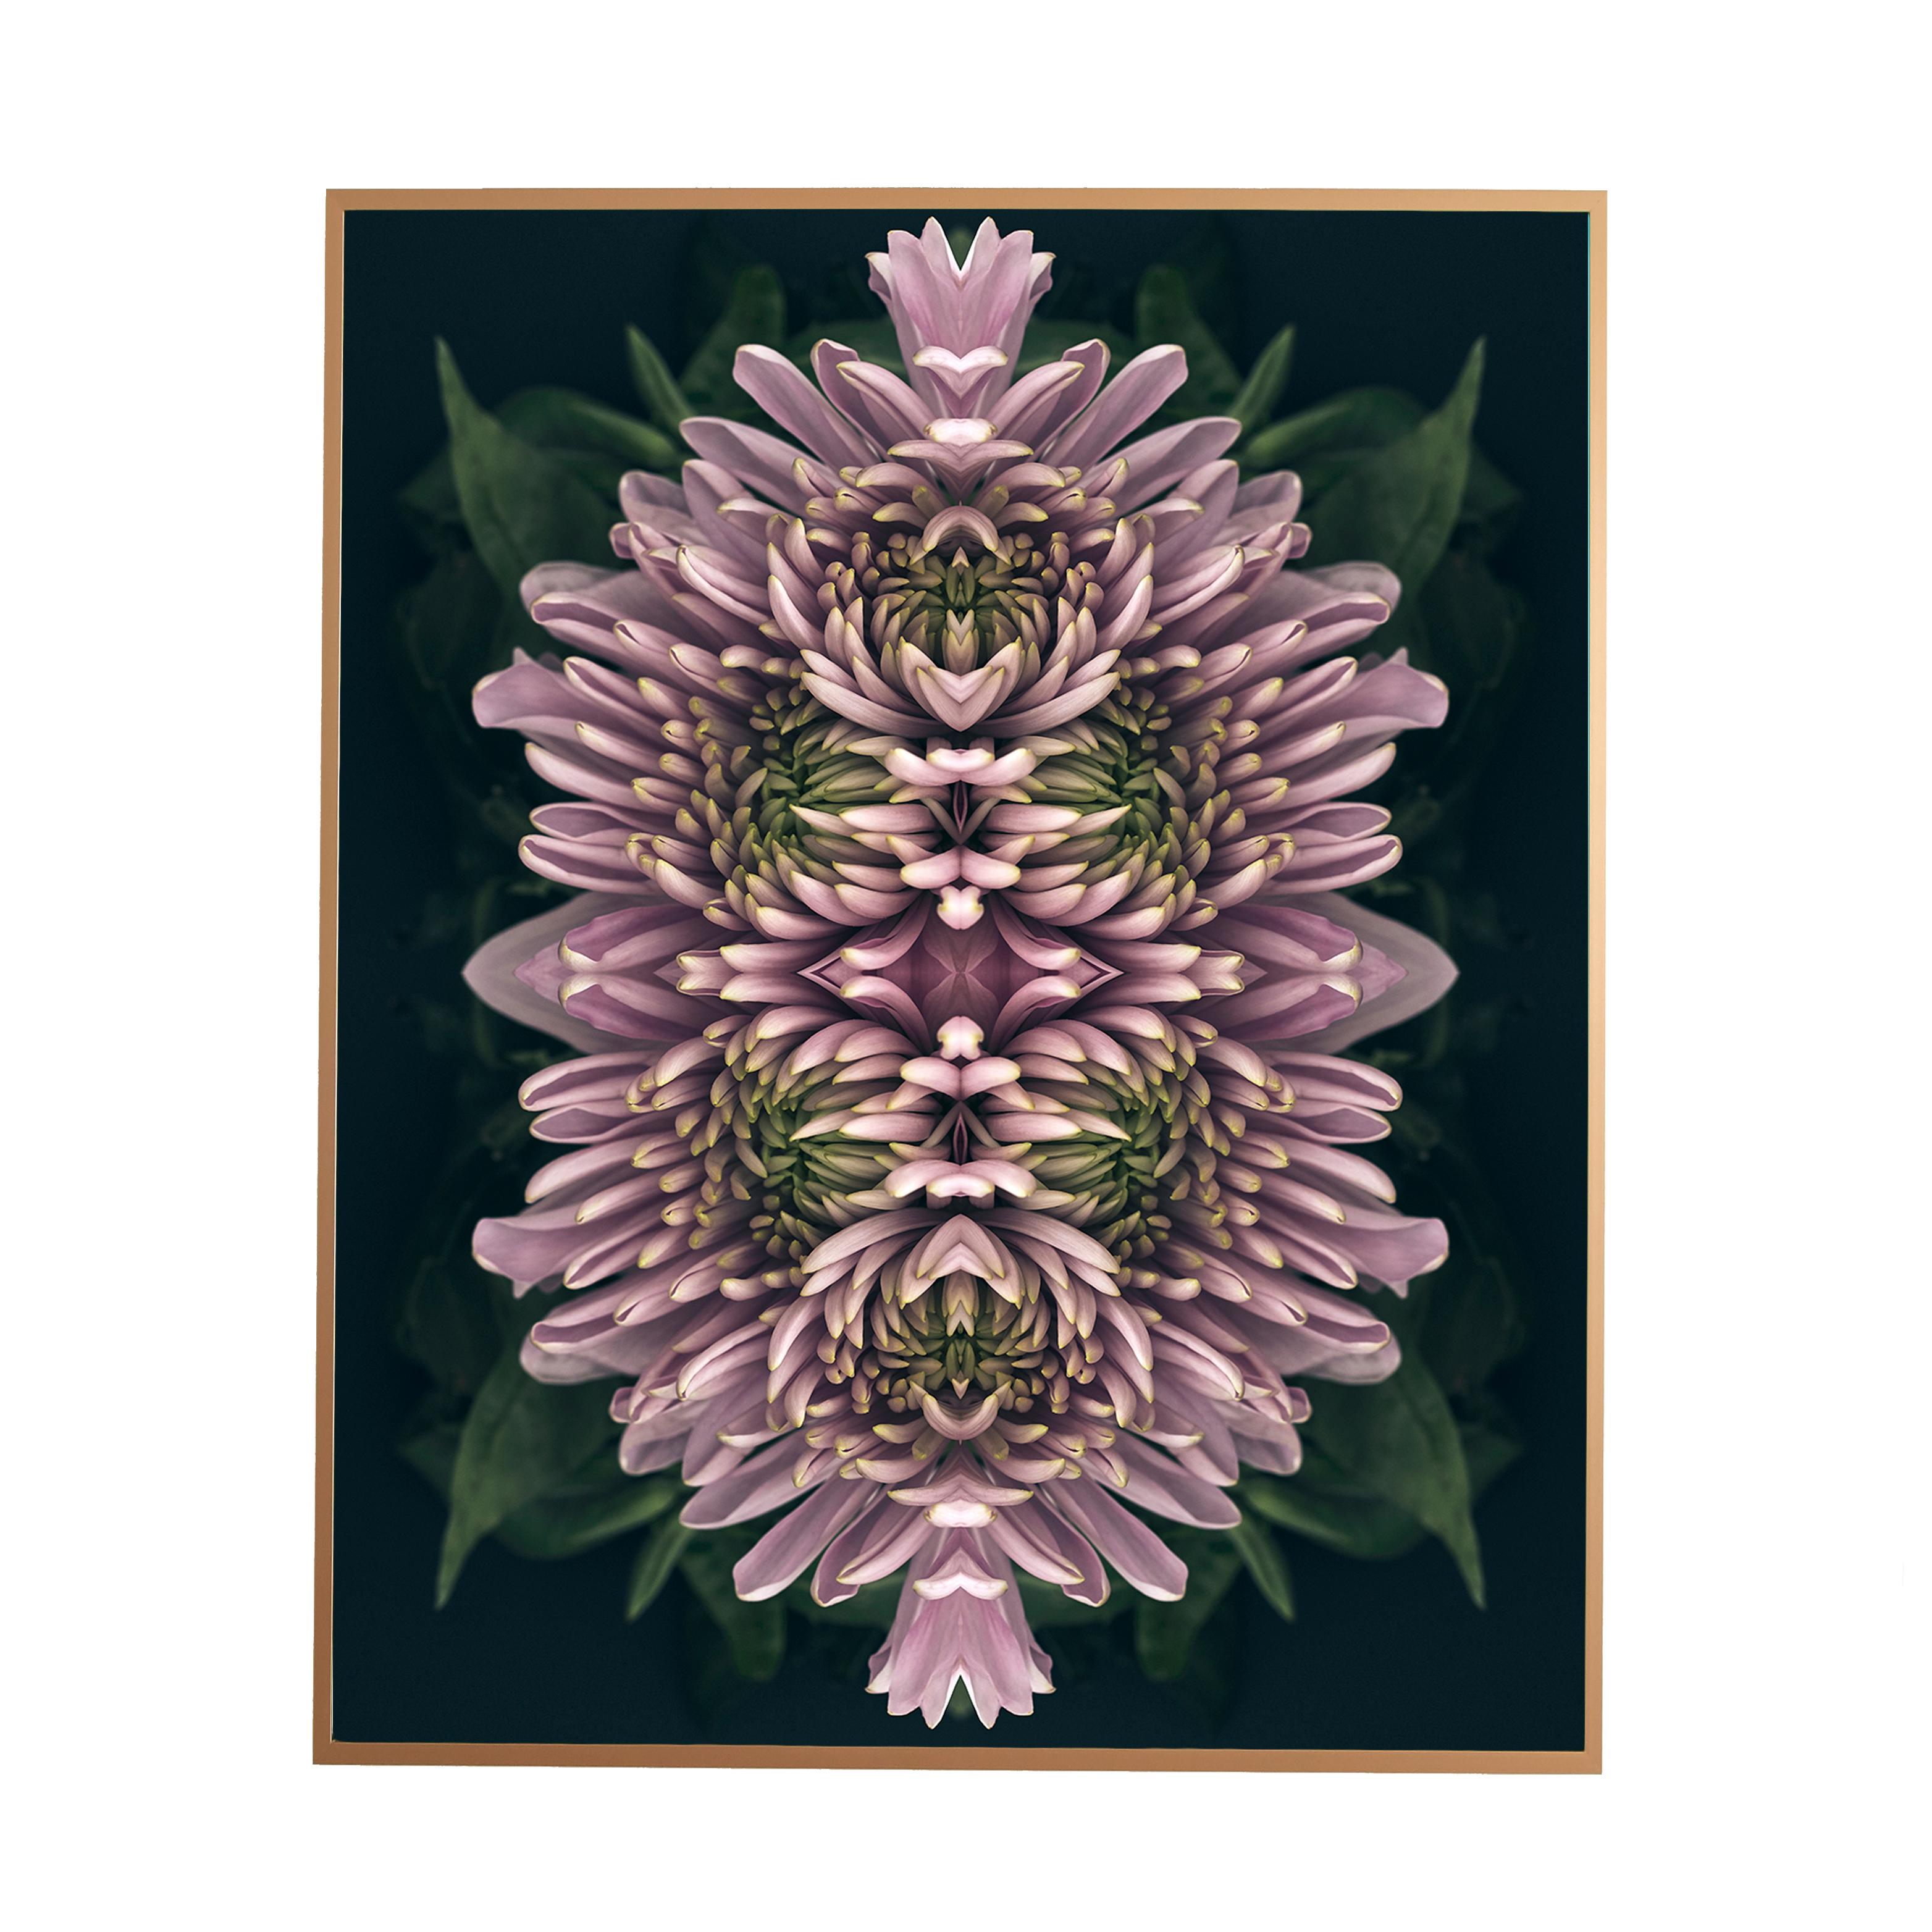 Dieser Druck zeigt die spielerische Beziehung zwischen natürlichen Formen und Pflanzen. In diesem Bild nutzt Erin die natürliche Komposition der violetten Blumen und ihre eigene Collagearbeit, um ein hypnotisches Mandala mit den Blumen zu schaffen.